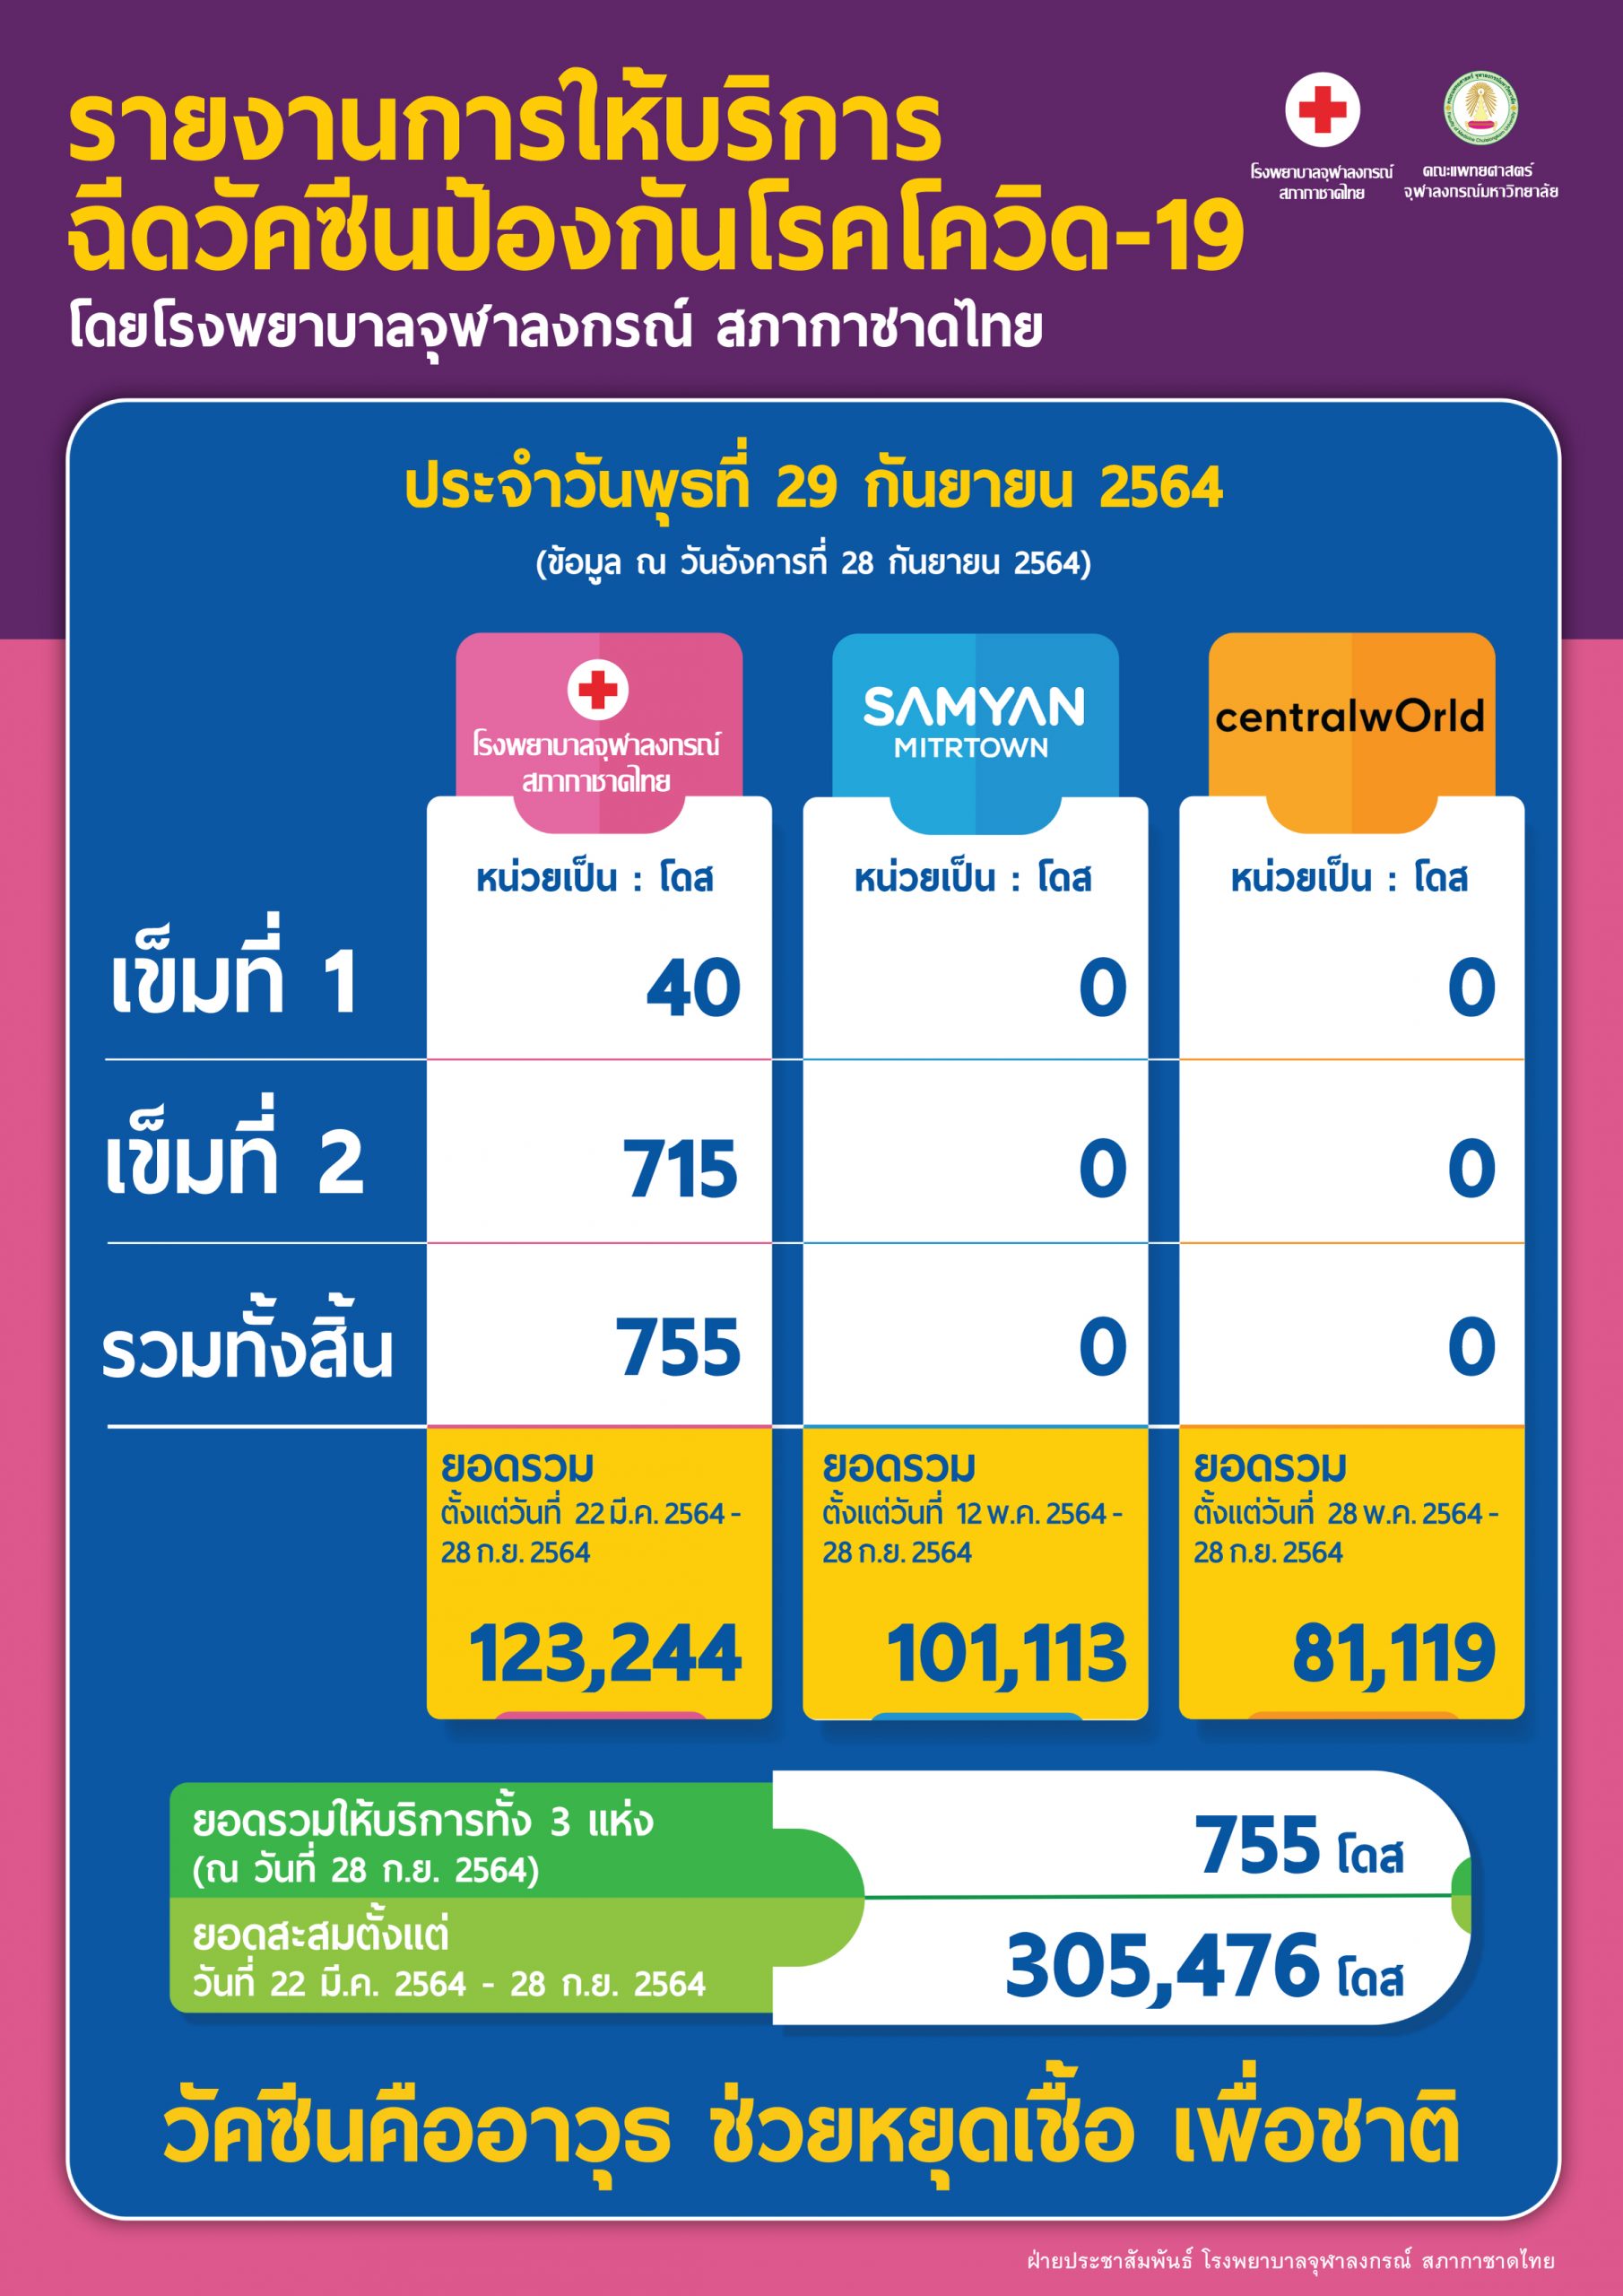 รายงานการให้บริการฉีดวัคซีนป้องกันโรคโควิด-19 โดยโรงพยาบาลจุฬาลงกรณ์ สภากาชาดไทย ประจำวันพุธที่ 29 กันยายน 2564